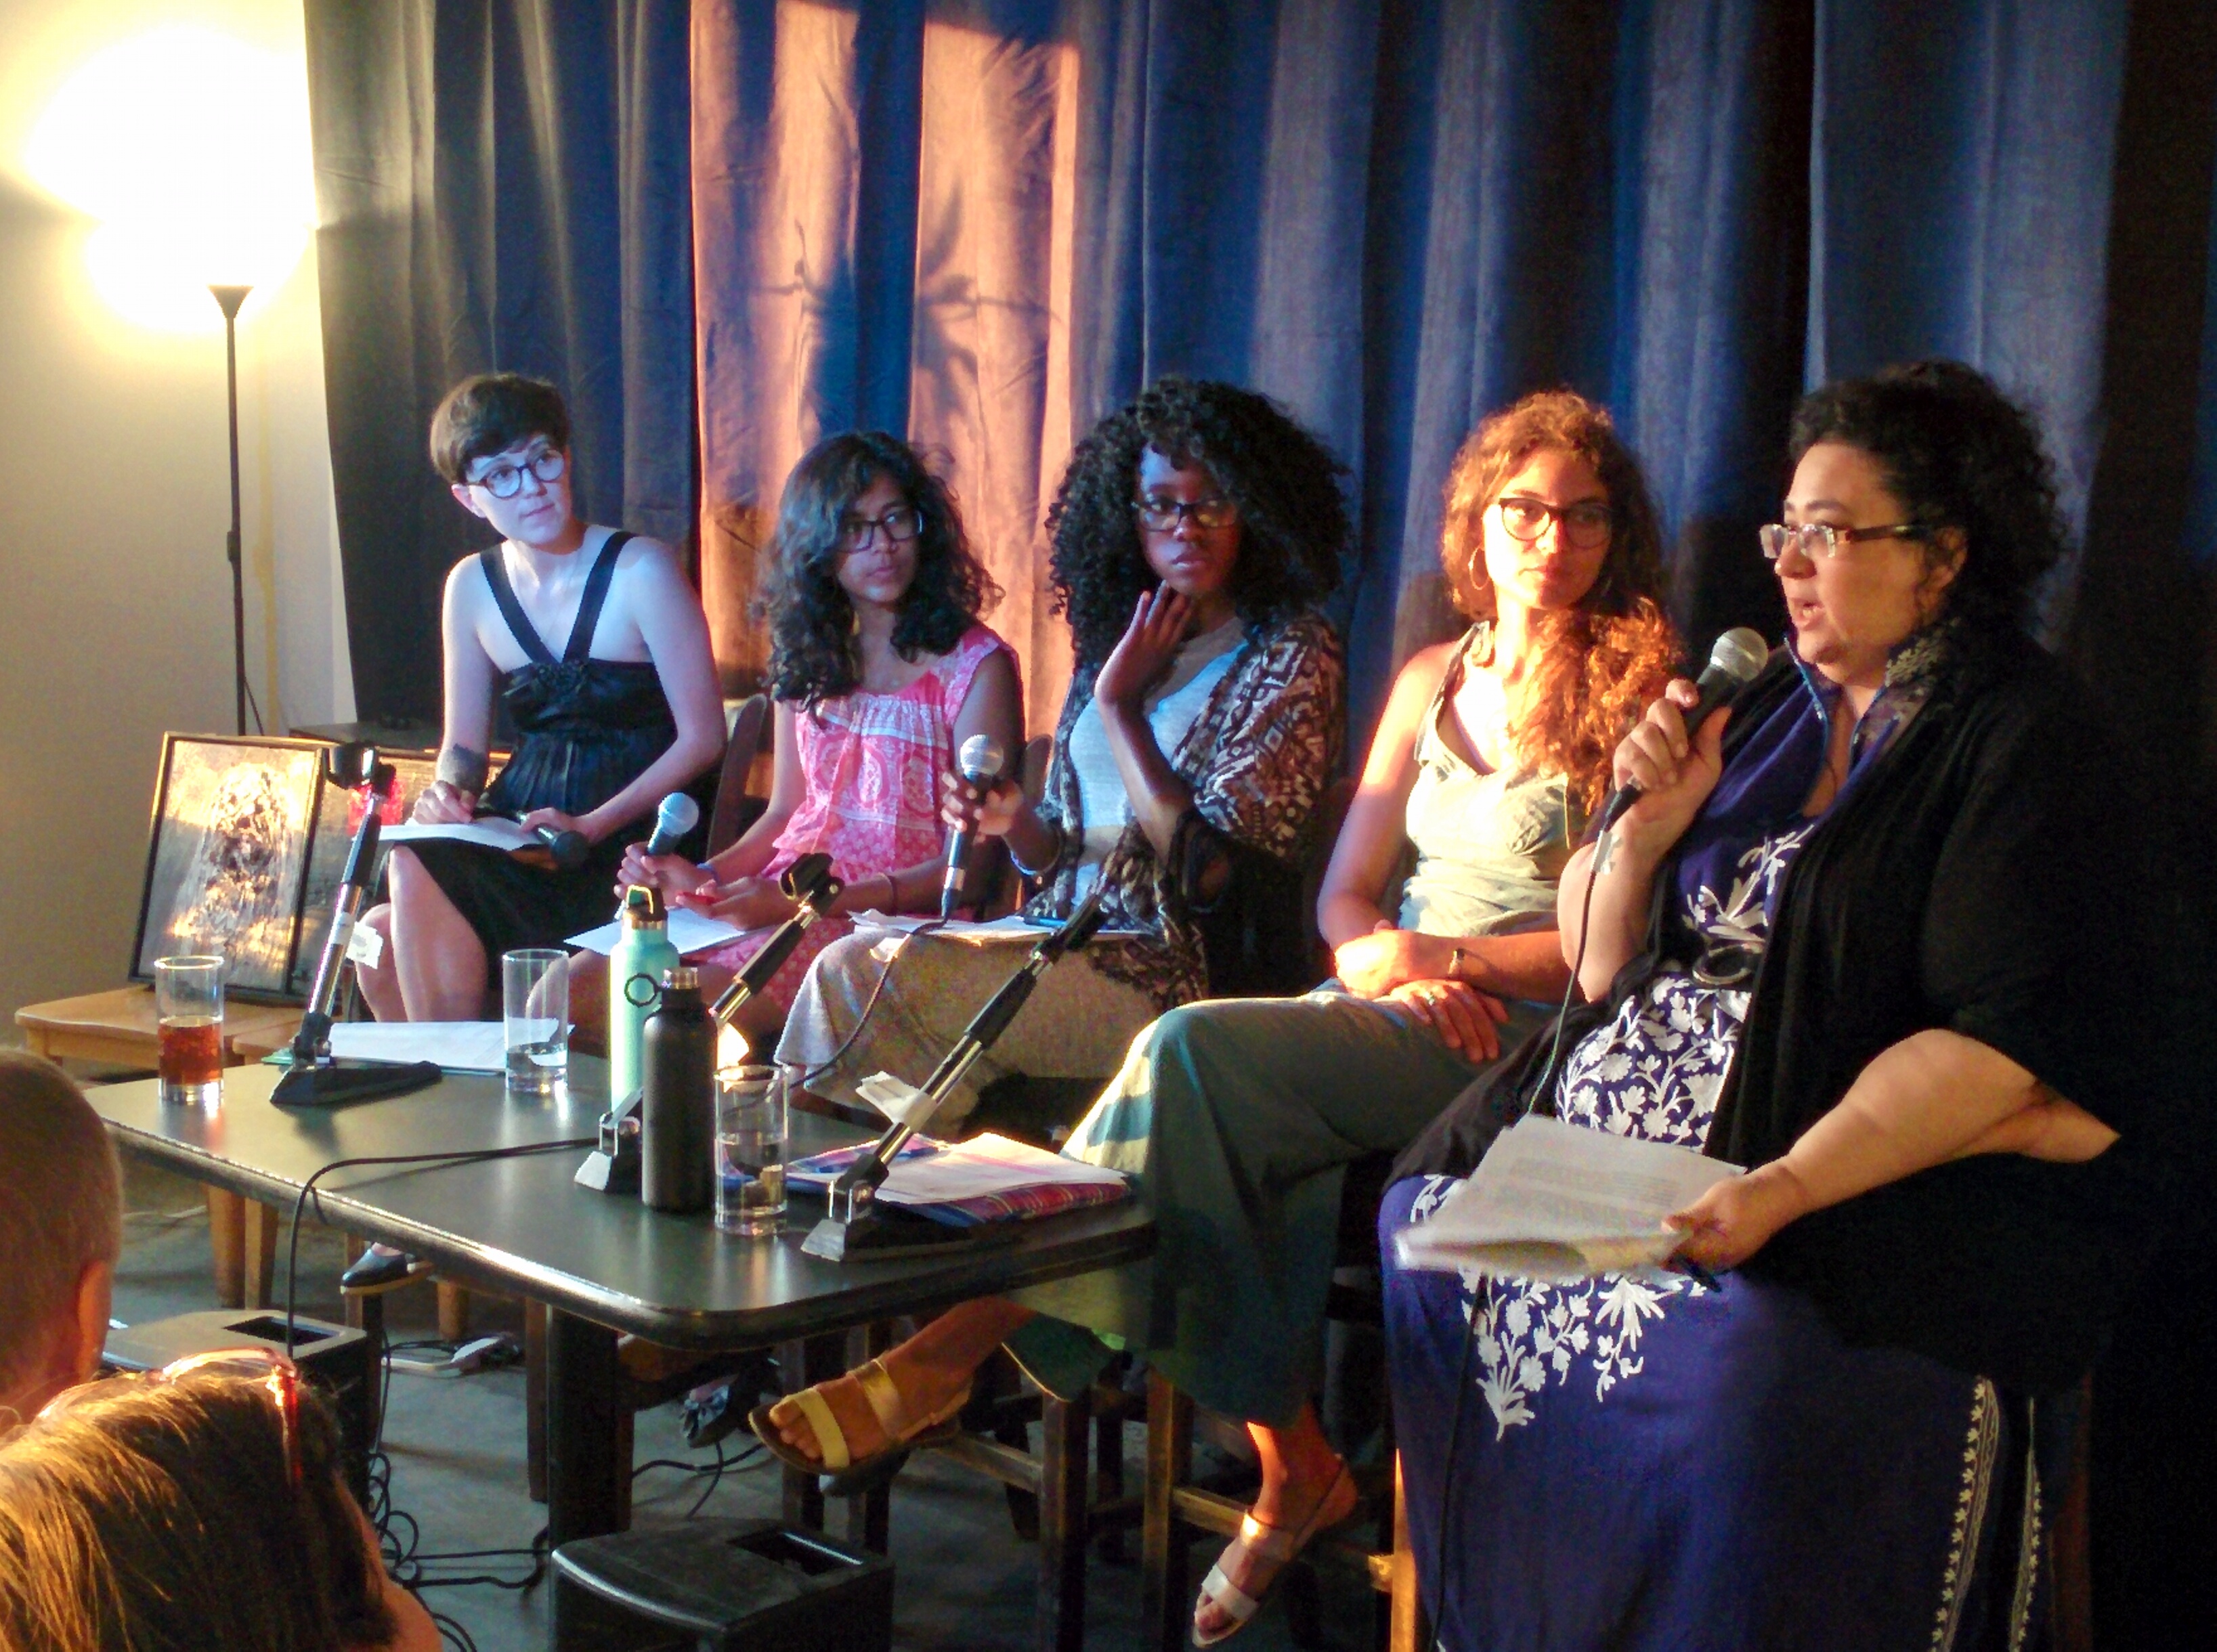 From left to right: Natalie Hanna, Sarah  Waisvisz, Sarah Kabamba, Manahil Bandukwala, Sanita Fejsic. Photo: Marie-Pierre Daigle